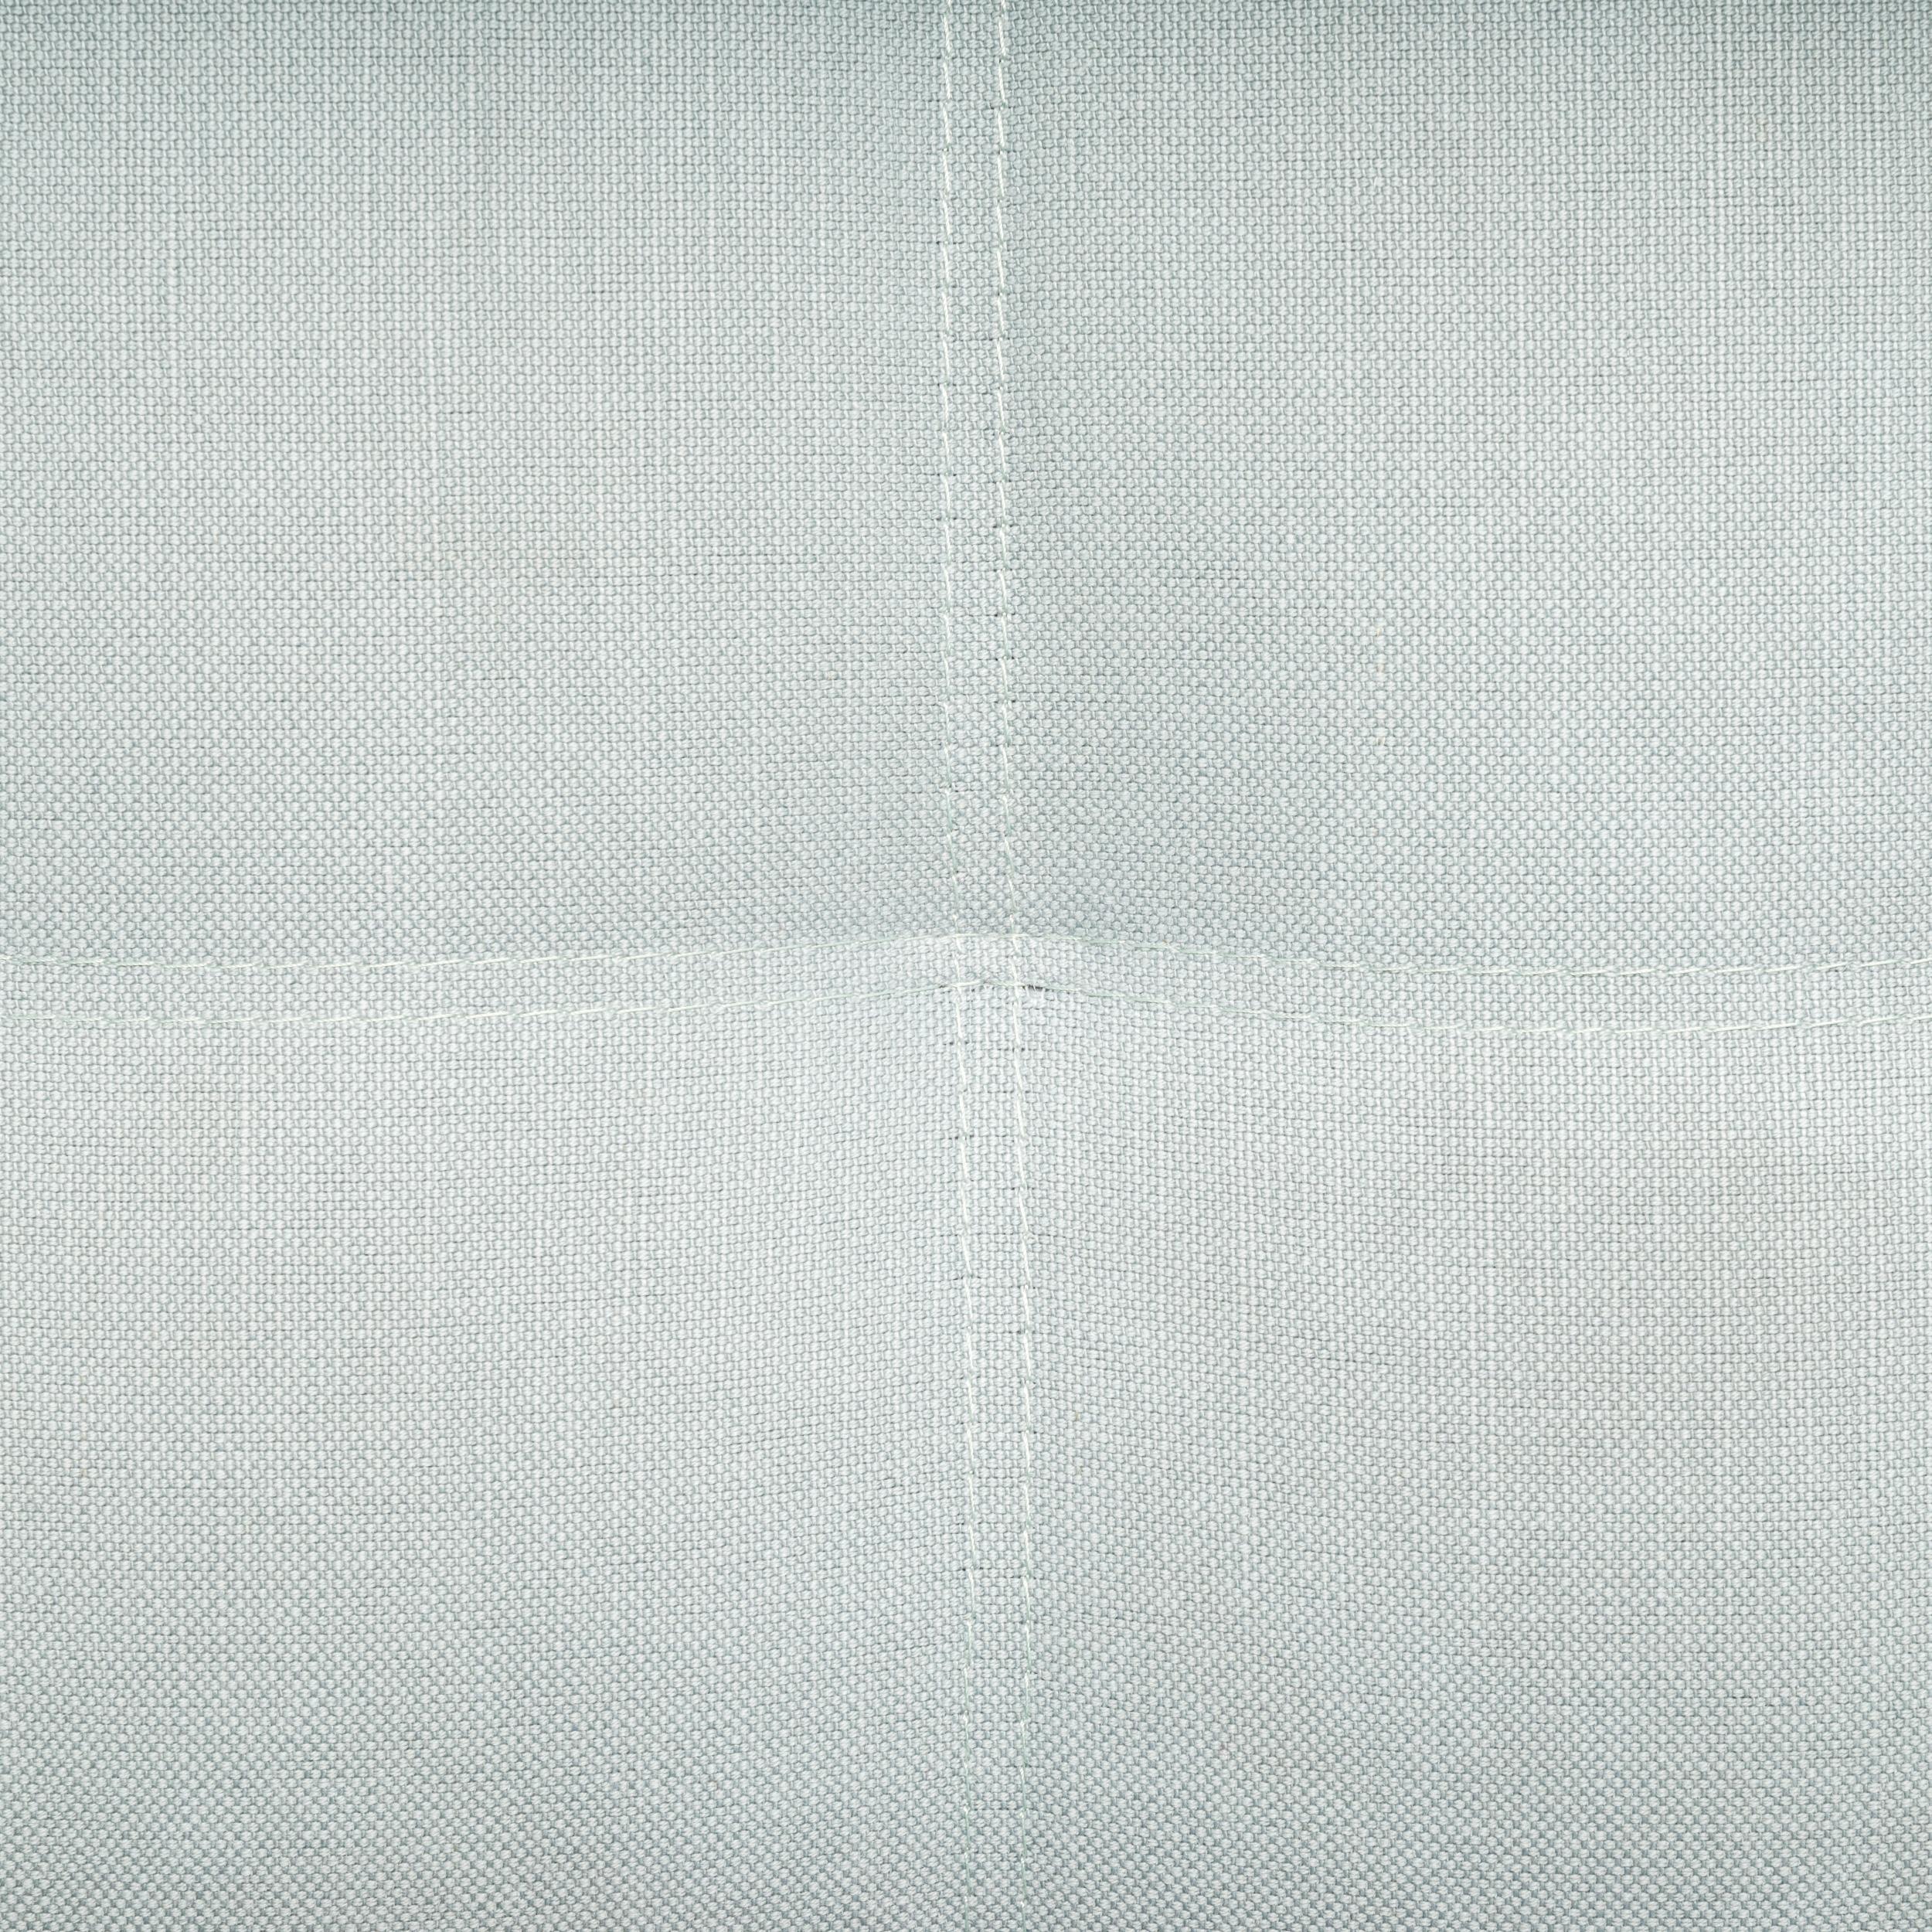 Contemporary Roche Bobois Pale Blue Fabric Profile 2.5 Seat Sofa